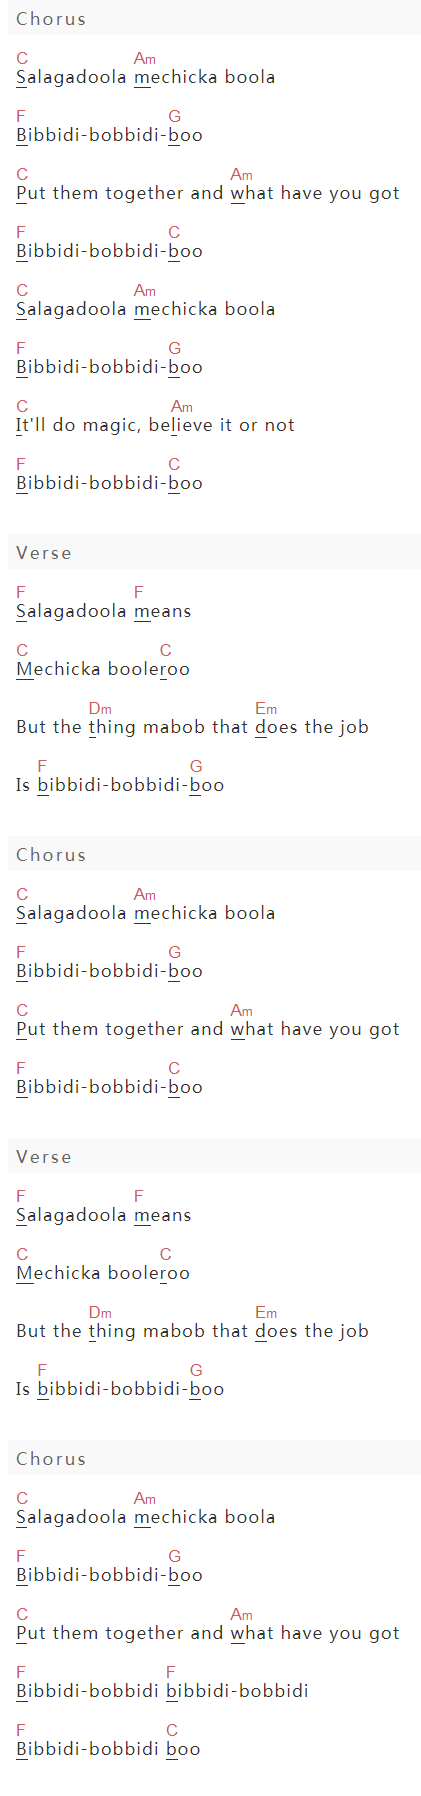 手嶌葵《Bibbidi Bobbidi Boo》吉他谱C调和弦谱(txt)1